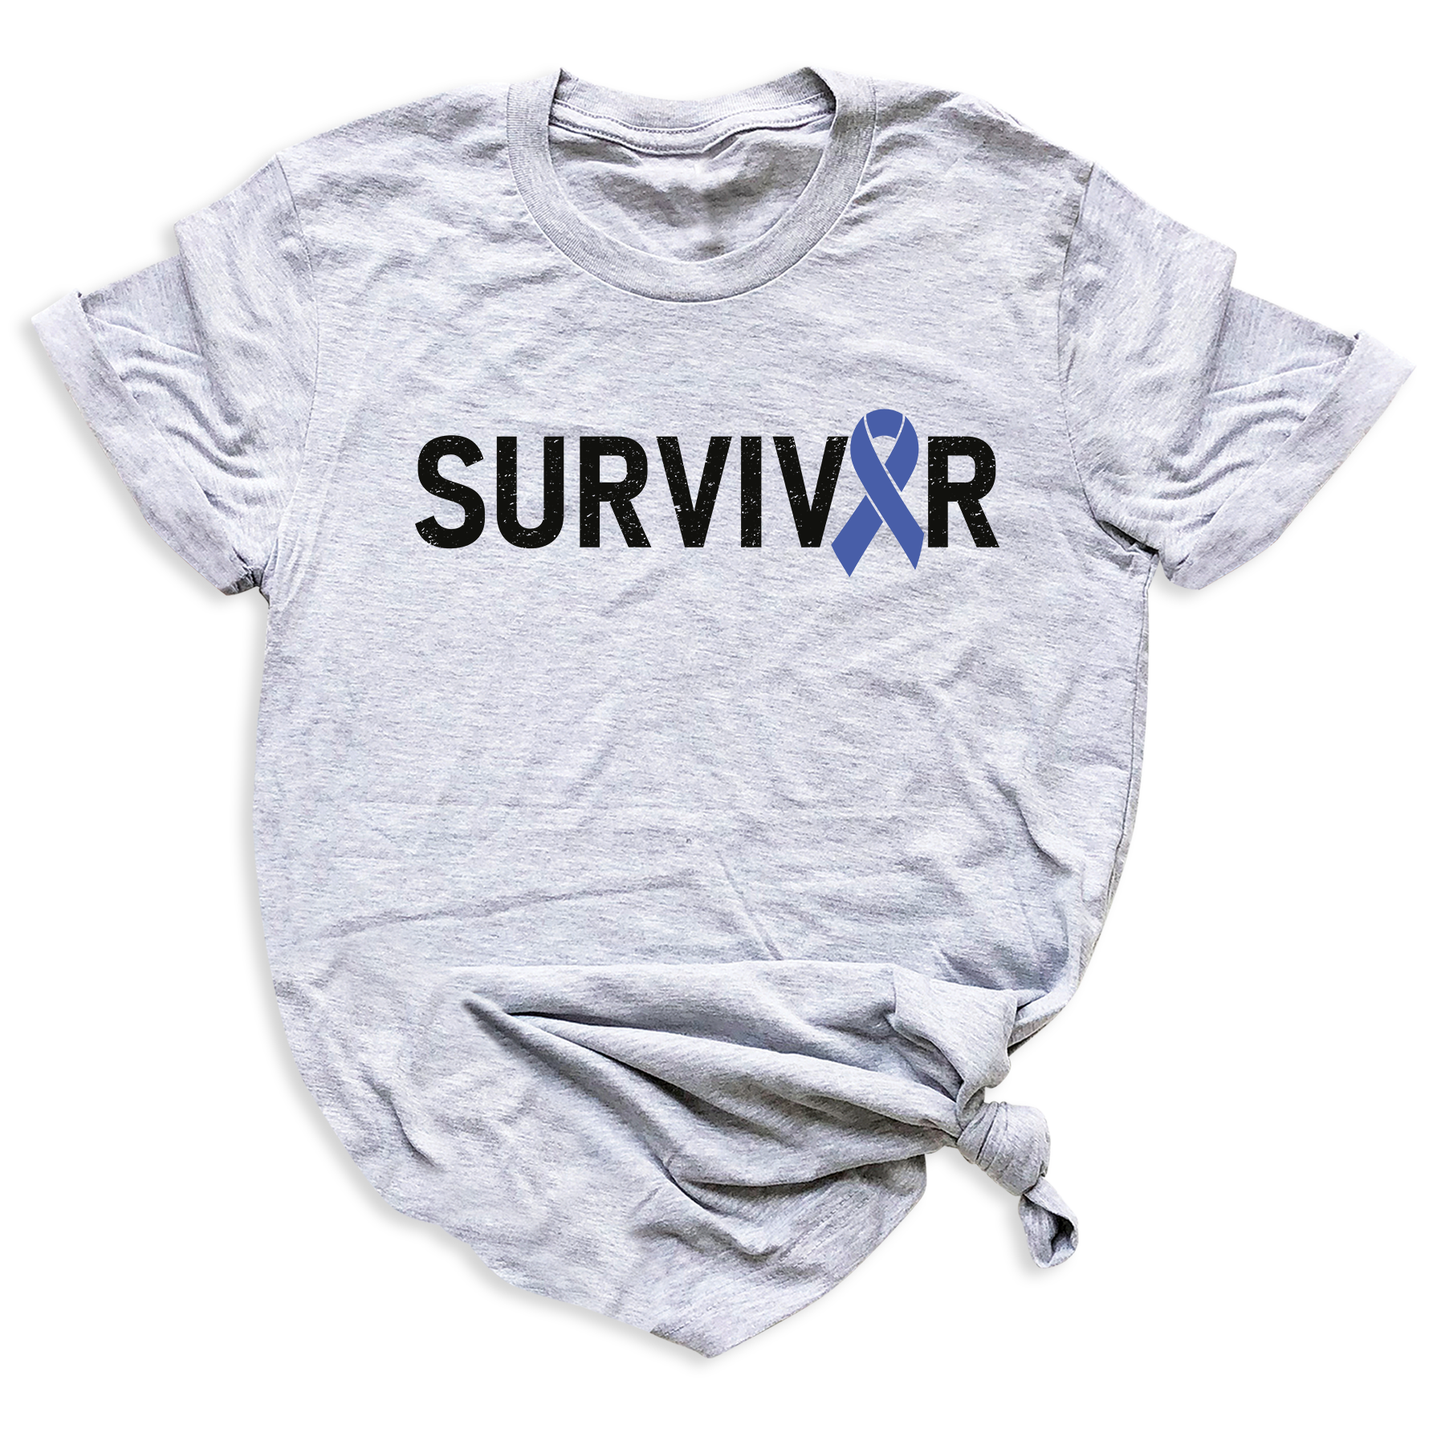 Survivor Shirts